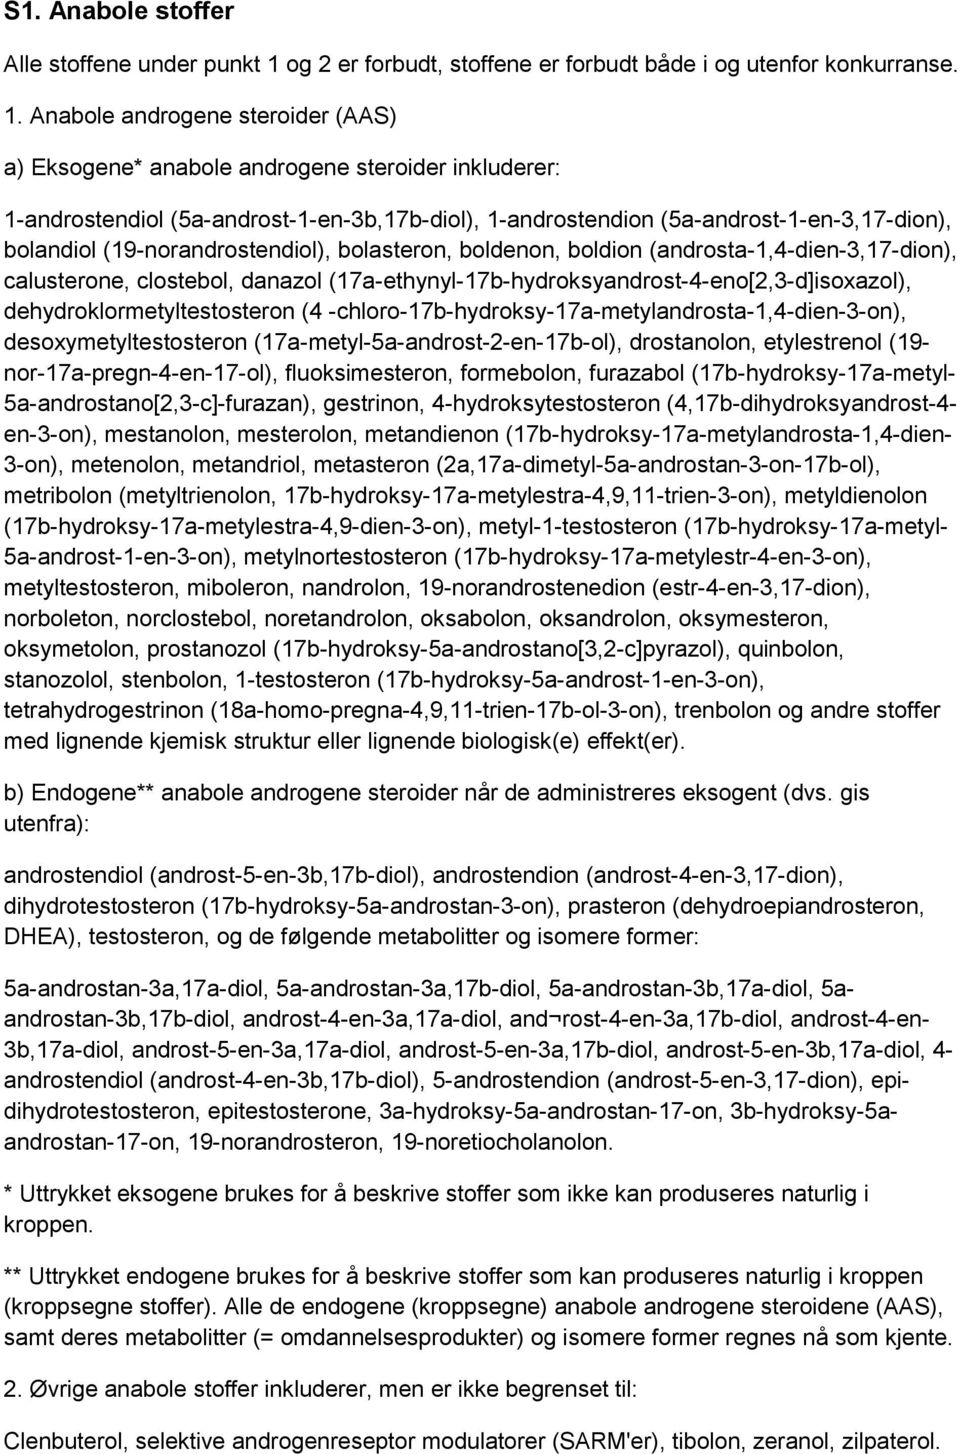 Anabole androgene steroider (AAS) a) Eksogene* anabole androgene steroider inkluderer: 1-androstendiol (5a-androst-1-en-3b,17b-diol), 1-androstendion (5a-androst-1-en-3,17-dion), bolandiol